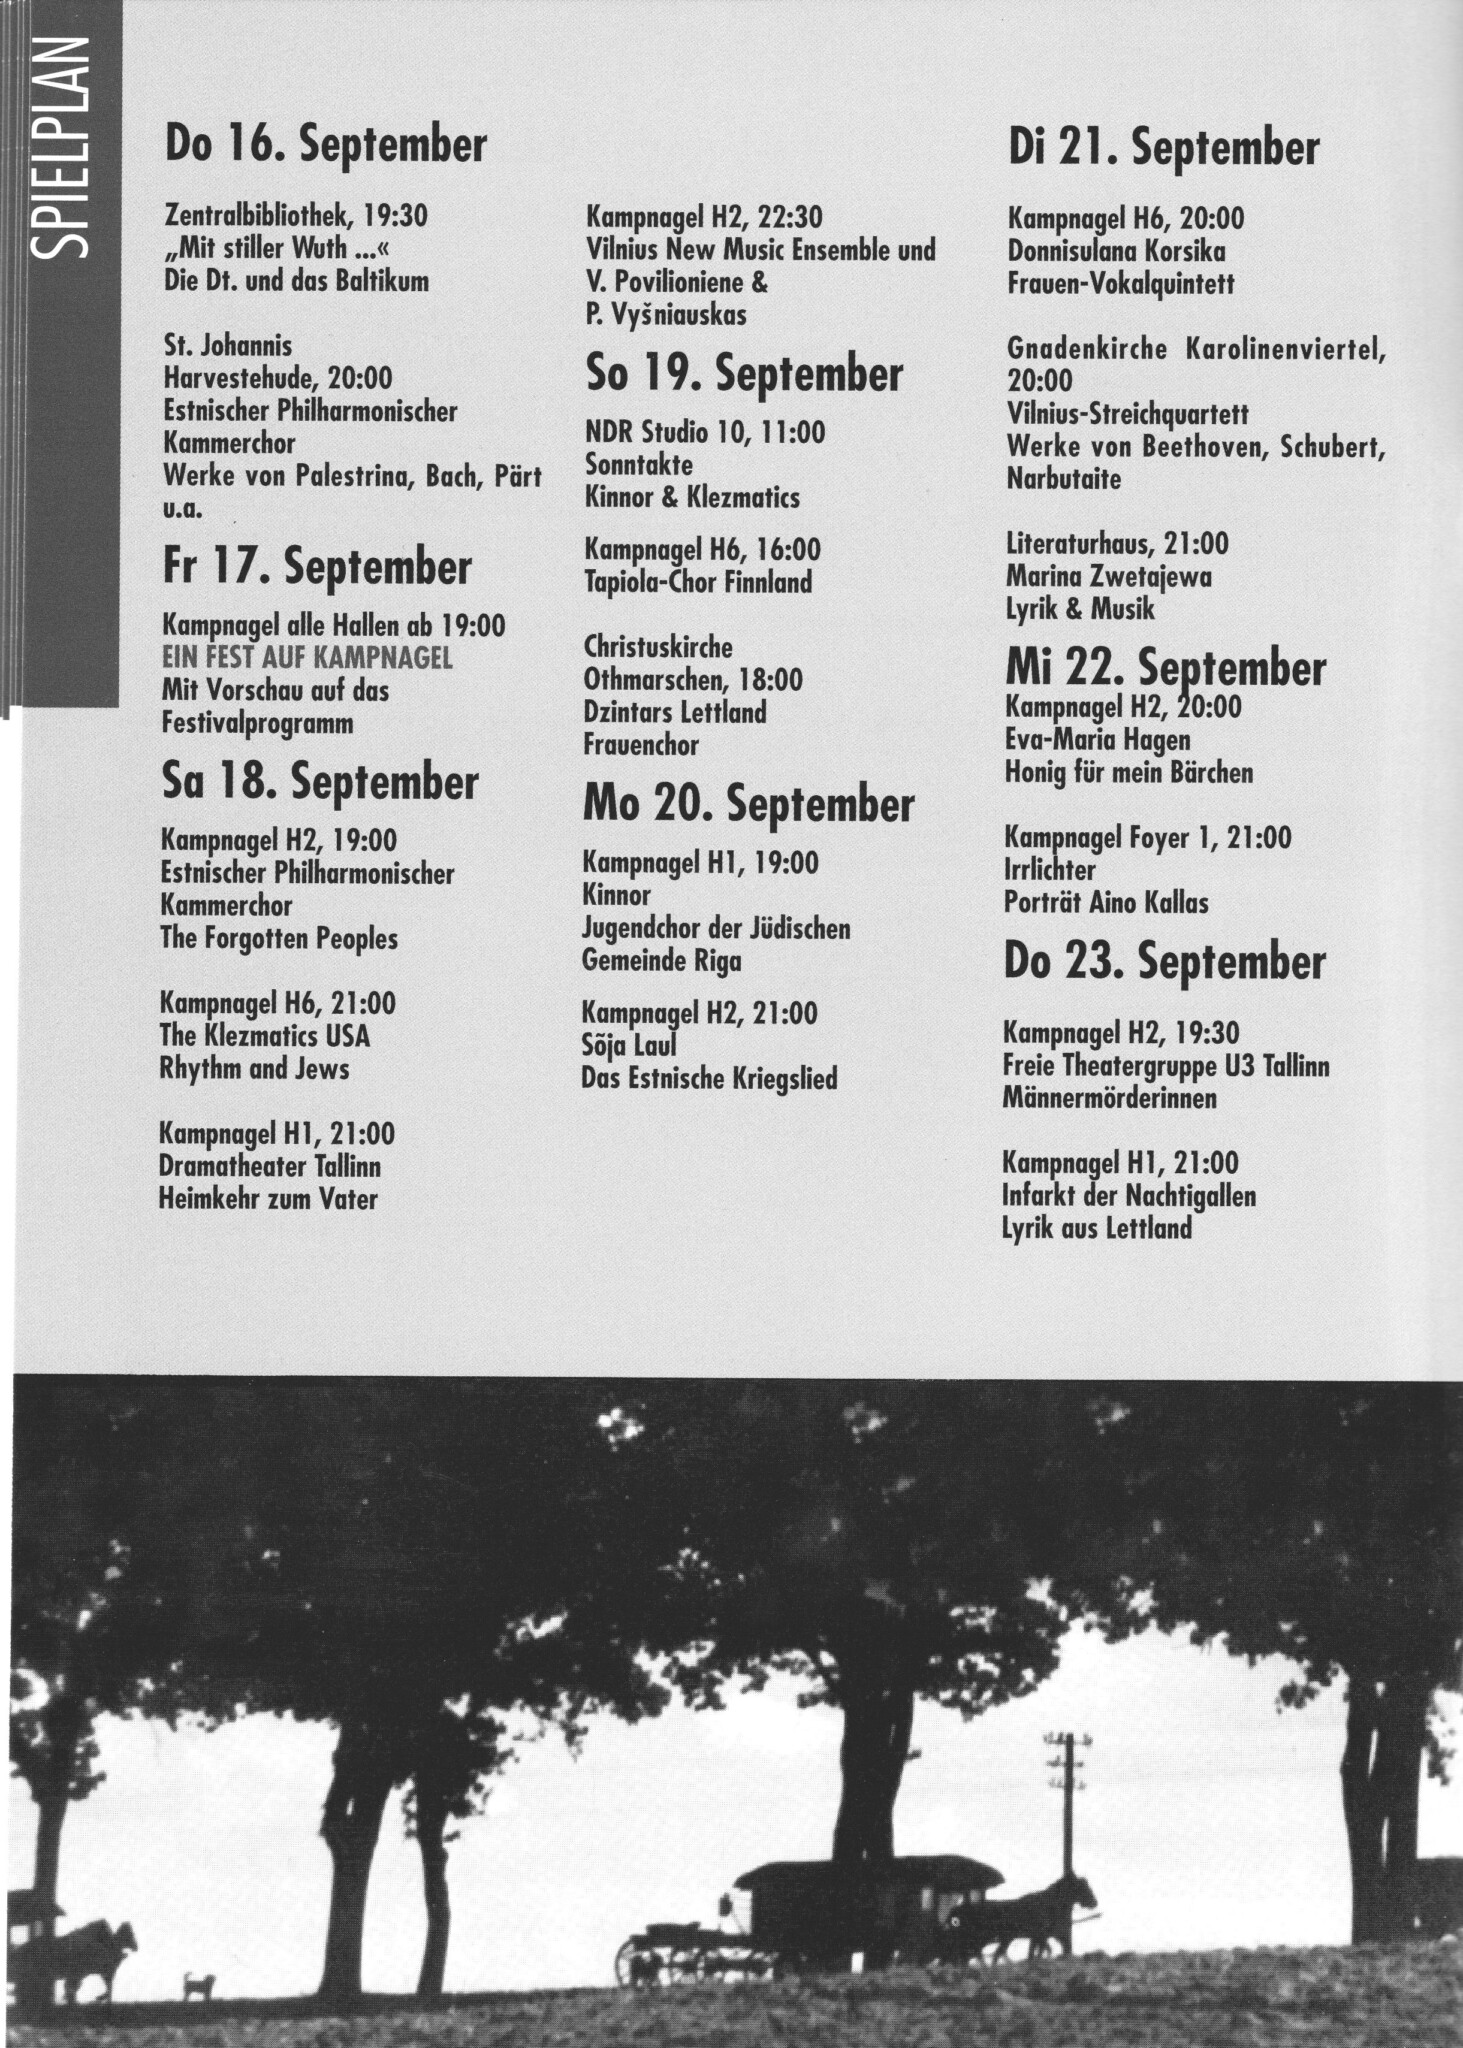 Hammoniale 1993 Festival der Frauen (Hammoniale 1993 Wir gehen Wege ohne Grenzen Gipsies, Cinti, Manouches, Roma)